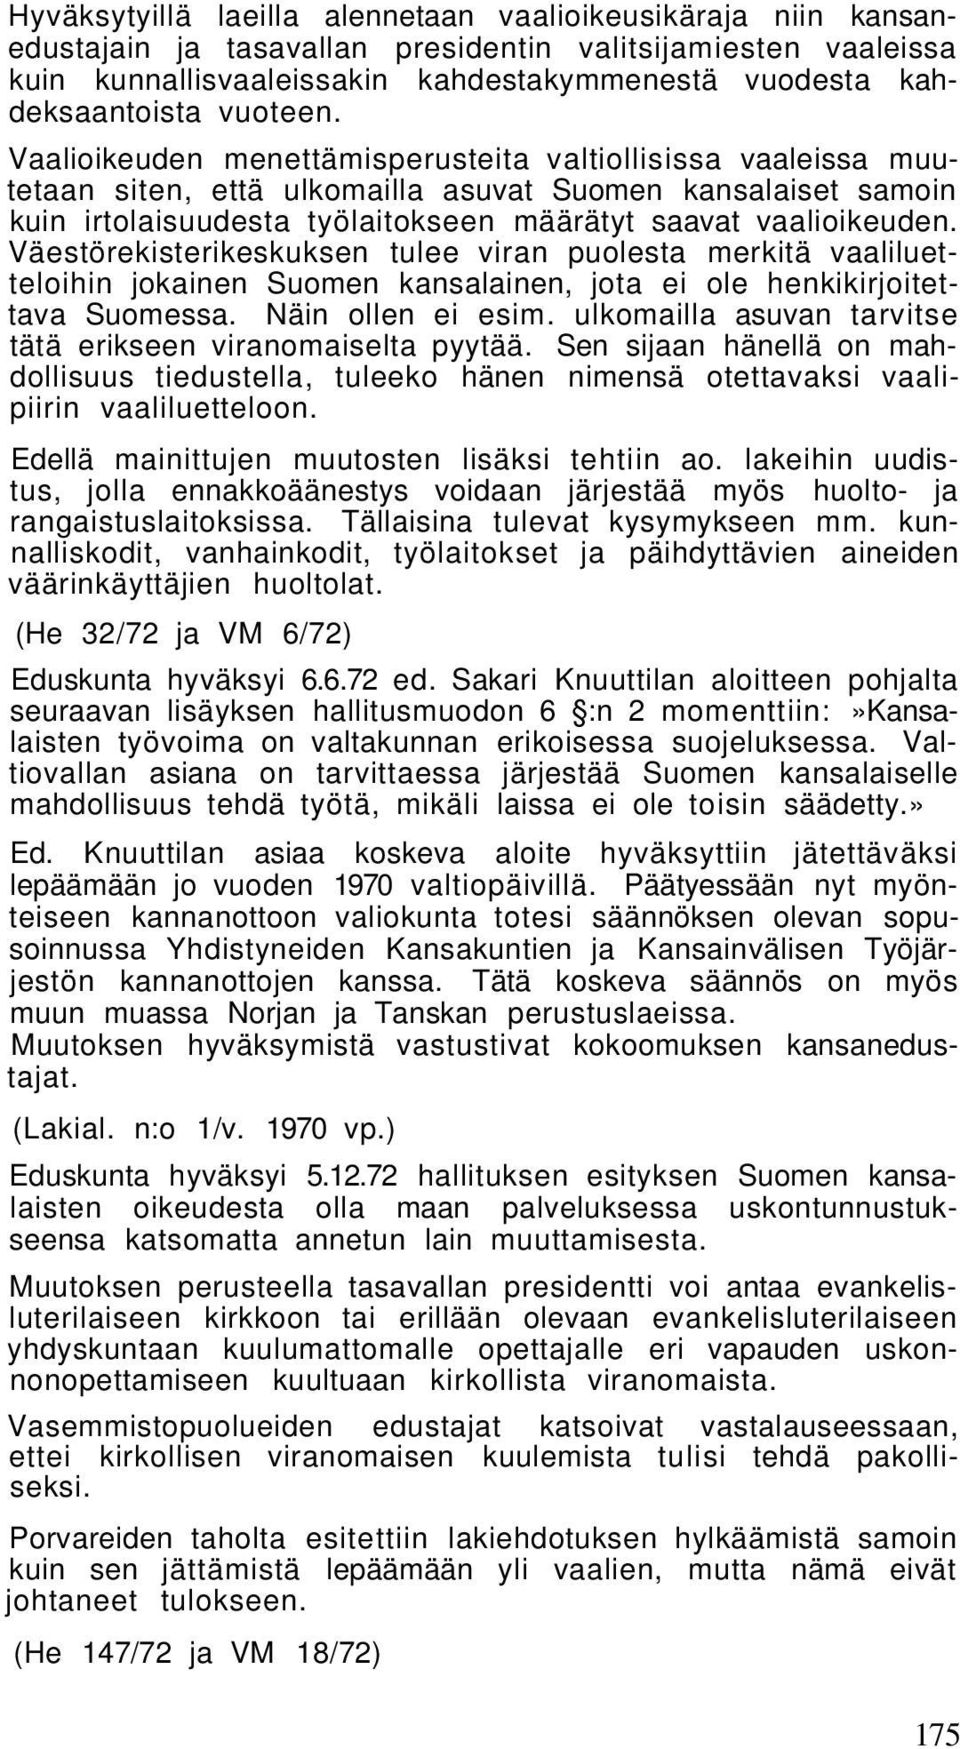 Väestörekisterikeskuksen tulee viran puolesta merkitä vaaliluetteloihin jokainen Suomen kansalainen, jota ei ole henkikirjoitettava Suomessa. Näin ollen ei esim.